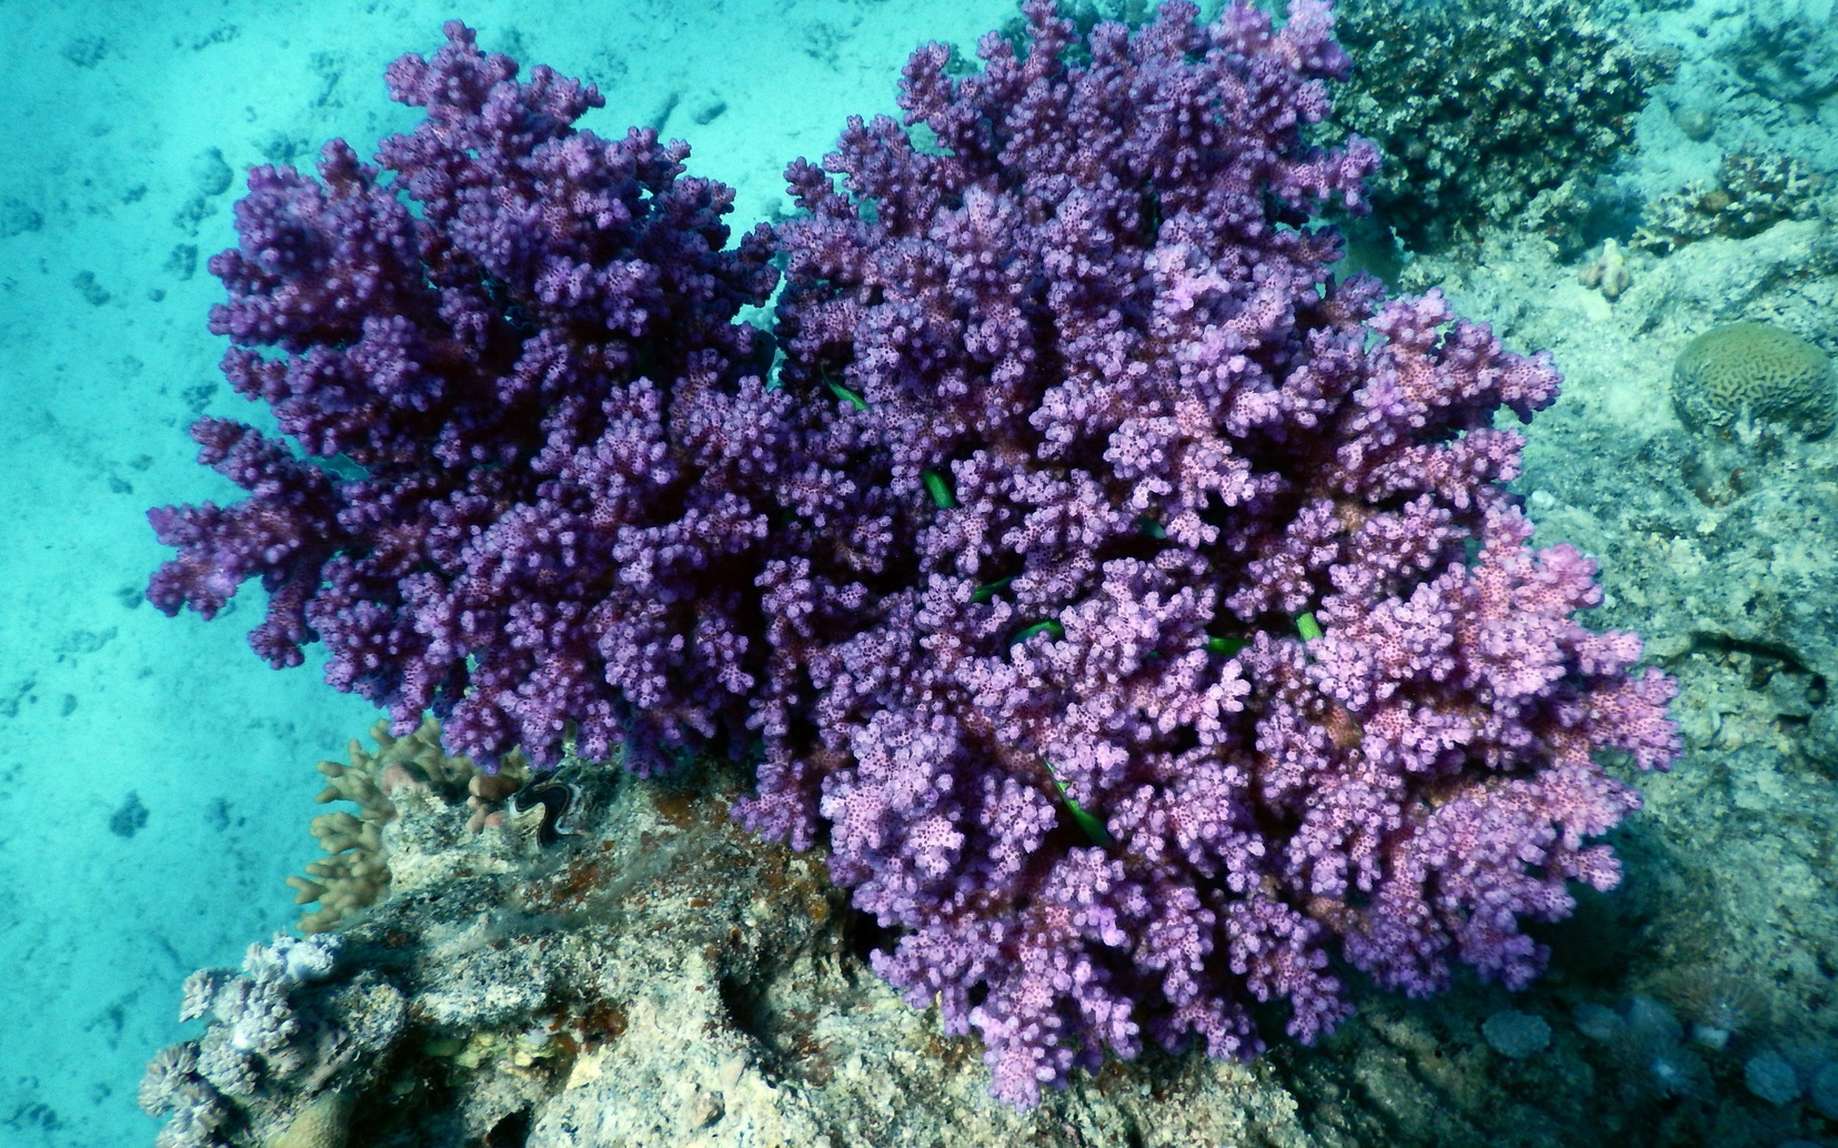 Les madrépores sont des cnidaires marins qui forment les coraux. © aarnhold, Fotolia